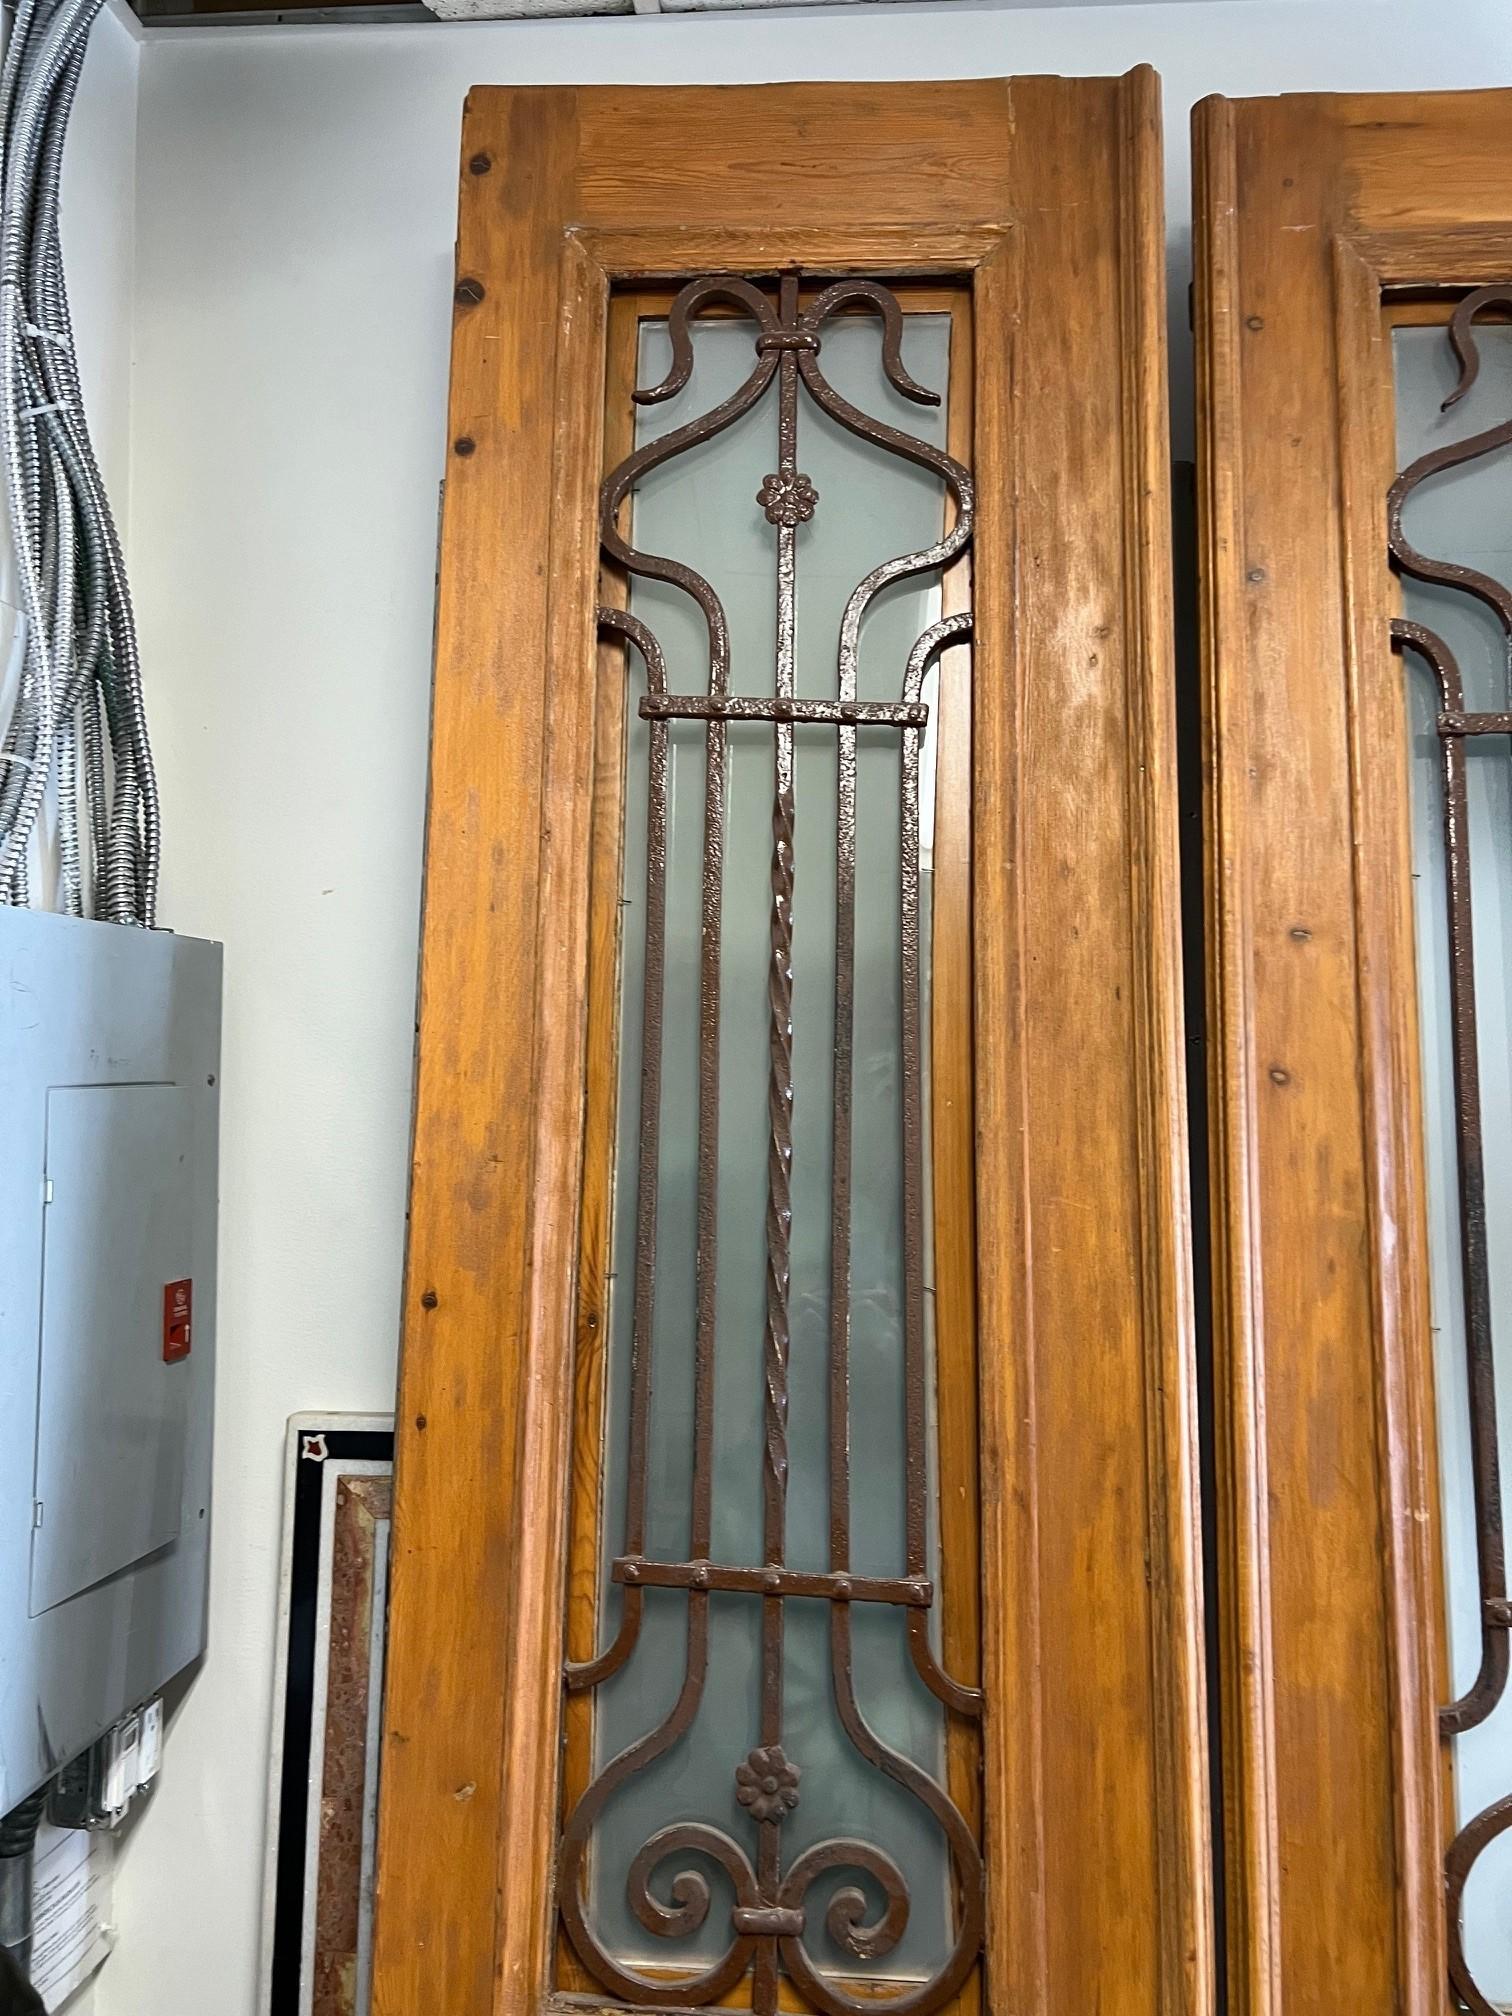 Il s'agit d'une superbe paire de portes anciennes en bois avec des panneaux décoratifs en fer. La paire a été importée d'Égypte et a été produite au début des années 1900, à une époque où l'architecture et le style français avaient une grande